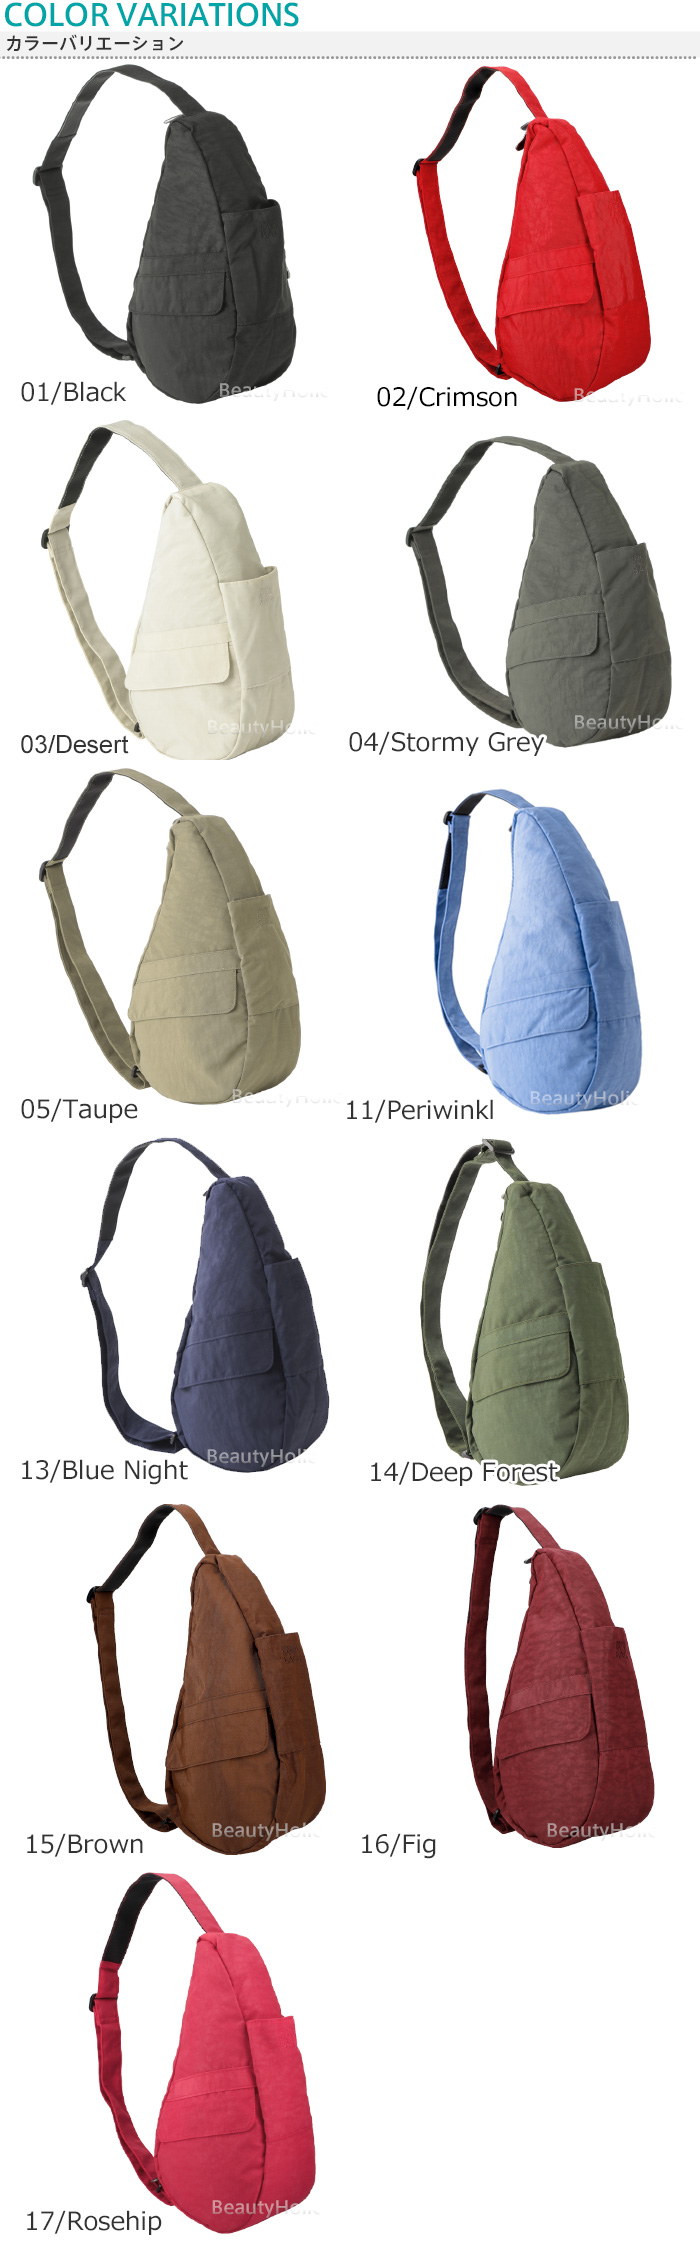 【楽天市場】Healthy Backbag ヘルシーバックバッグ アメリバッグ XS ナイロンヘルシーバック AmeriBag ショルダー